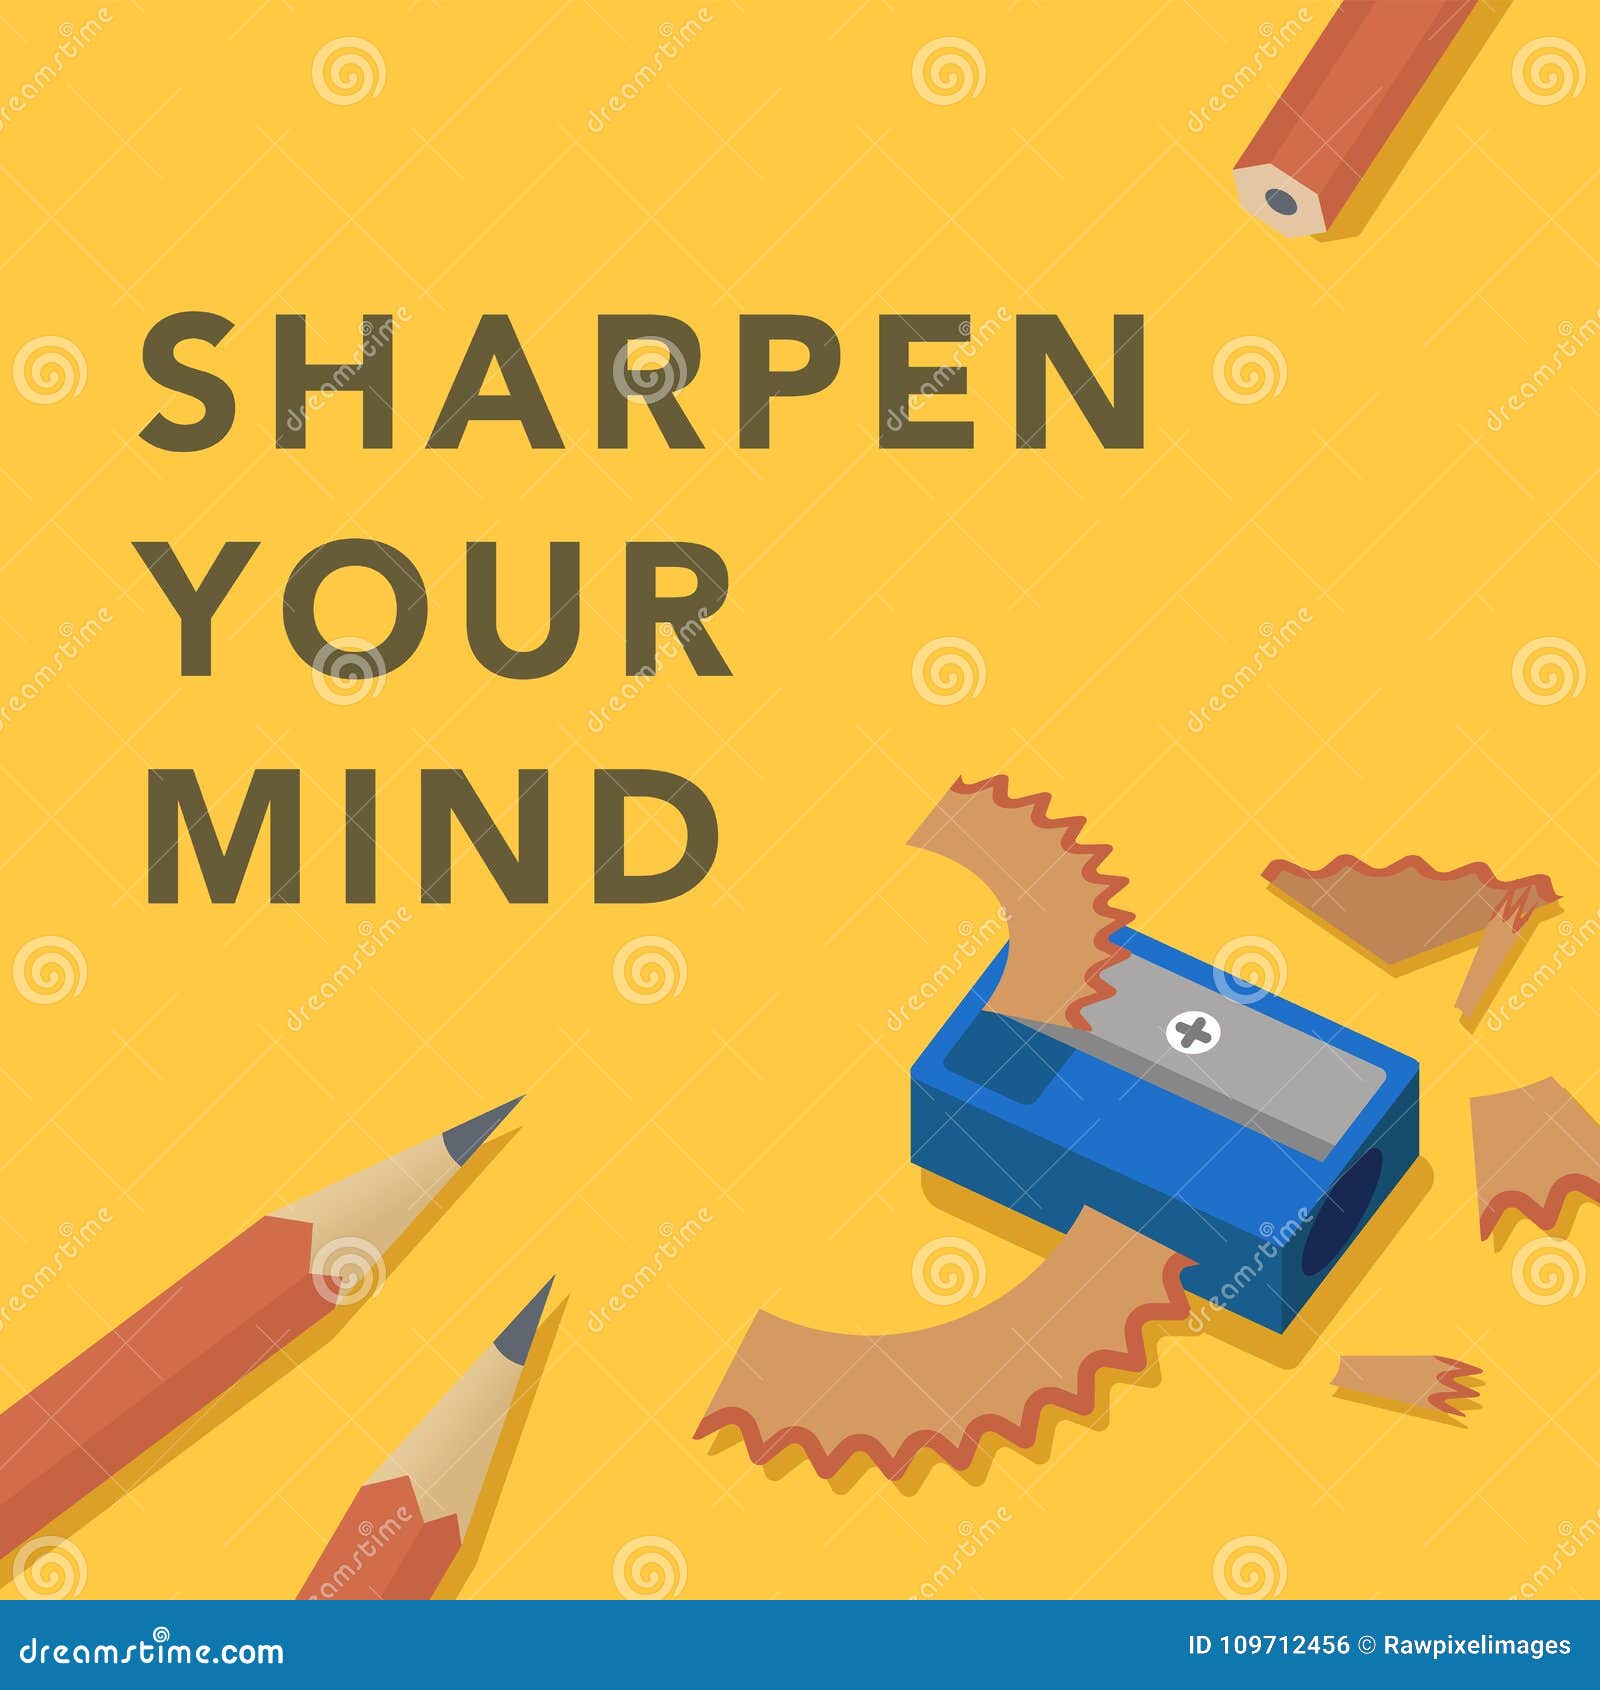 sharpen your mind conceptual 